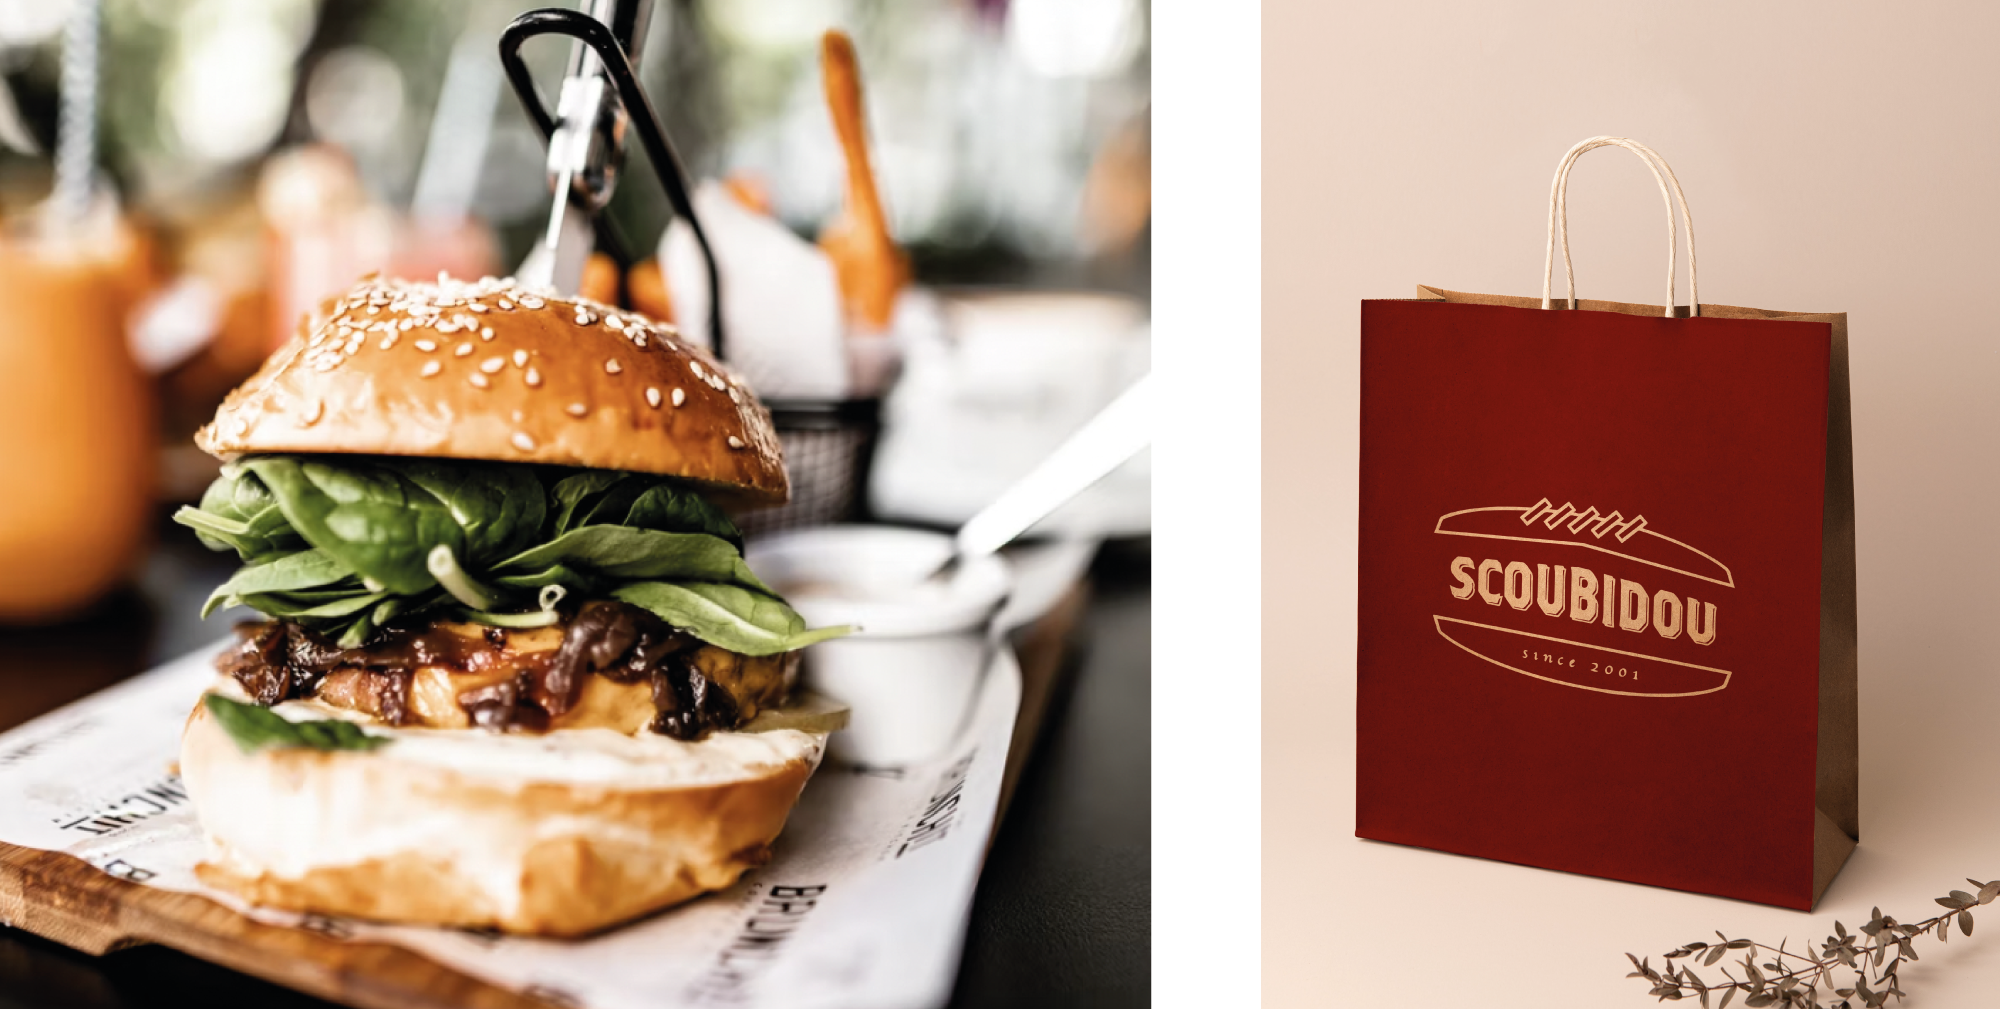 Identité visuelle du restaurant Scoubidou avec une photographie de burger et un sac de restauration imprimé avec le logotype.